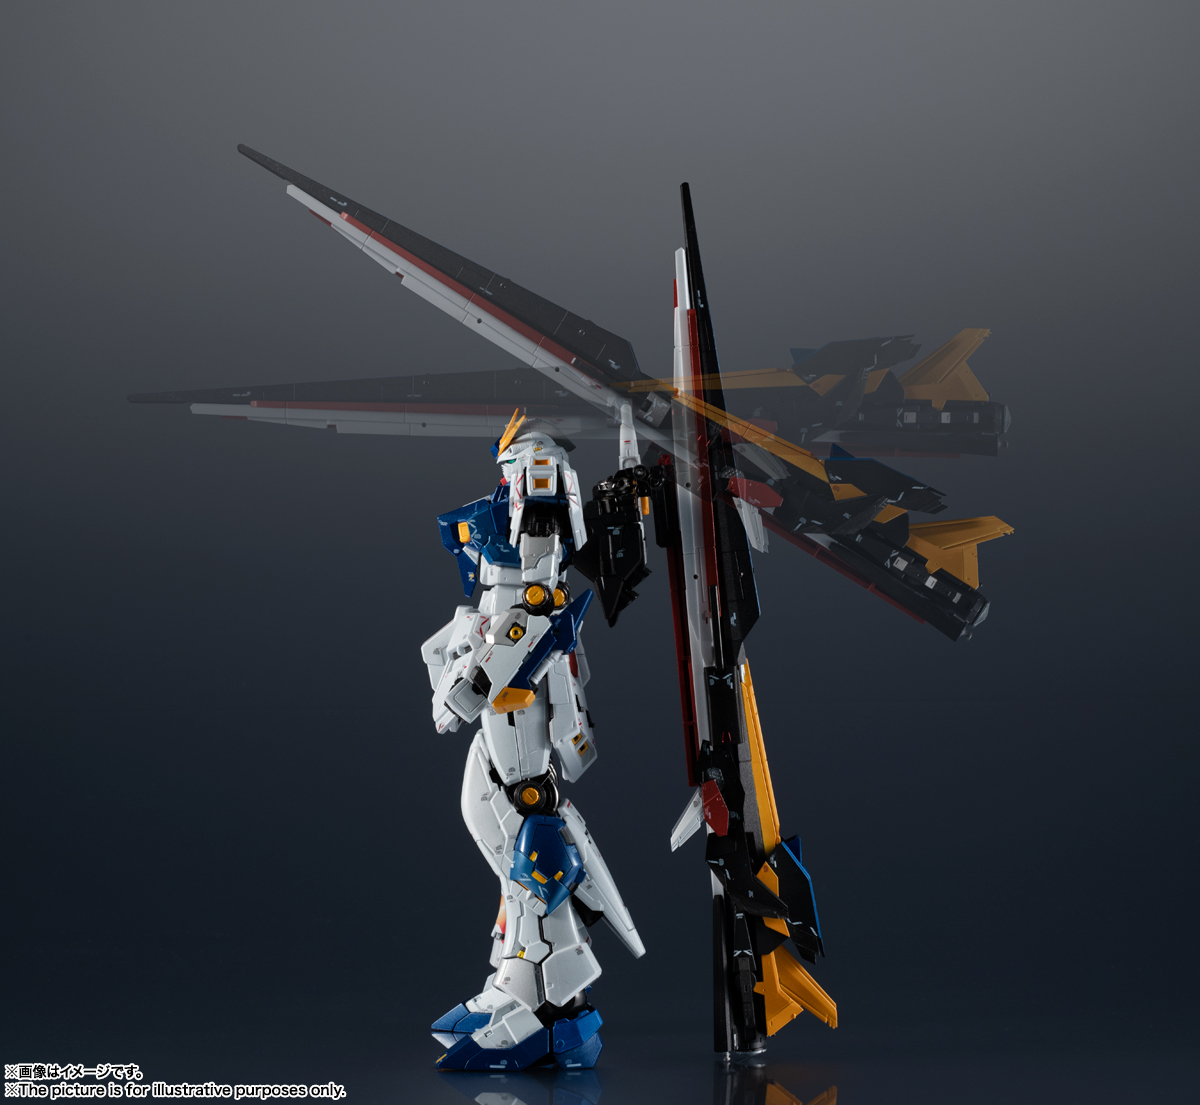 機動戦士ガンダムシリーズ フィギュア 超合金(チョウゴウキン) RX-93ff νガンダム